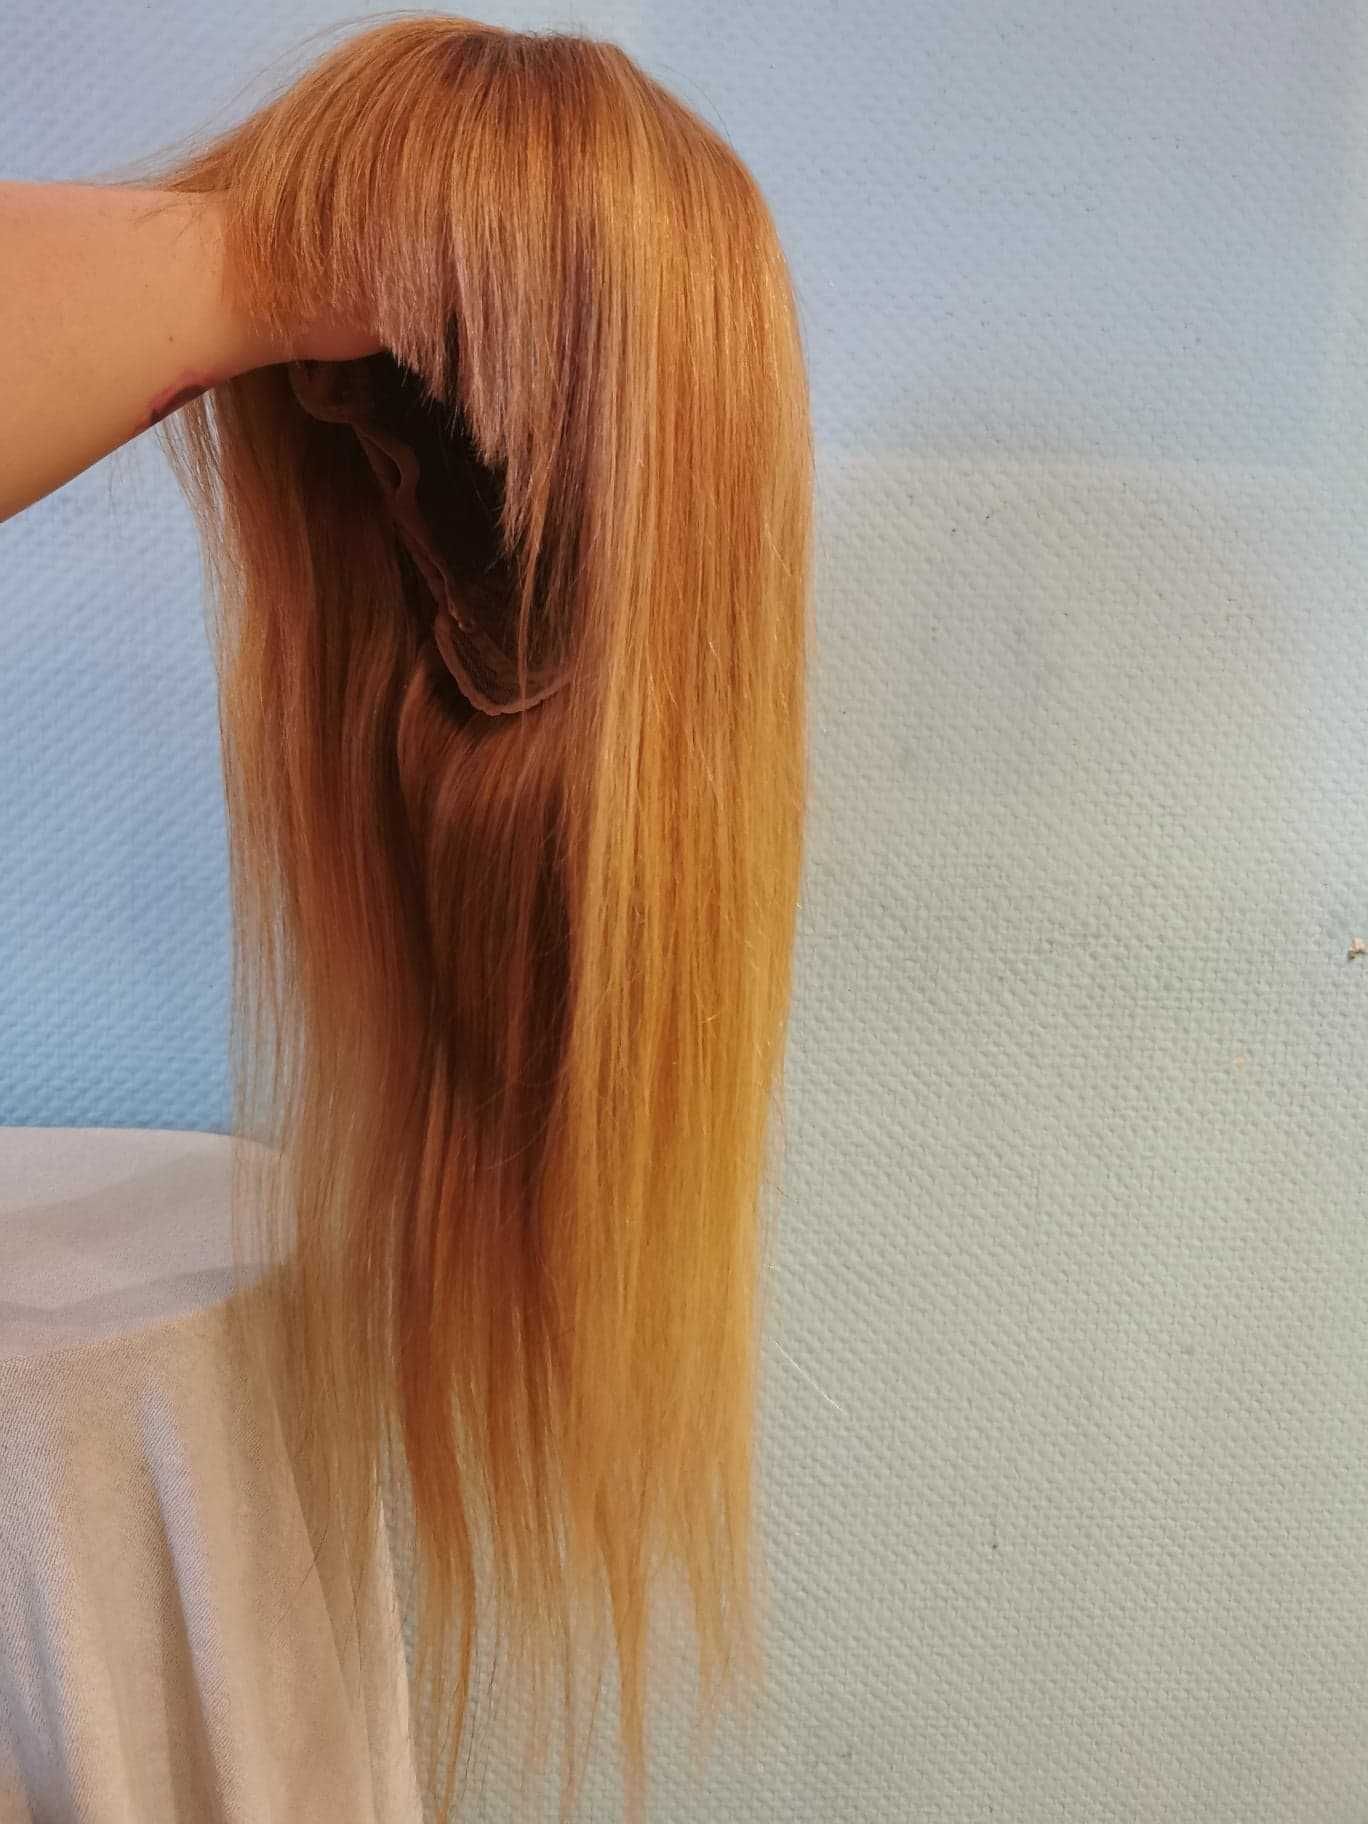 Peruka naturalne włosy złoty blond 60 cm koronkowa prosta grzywka